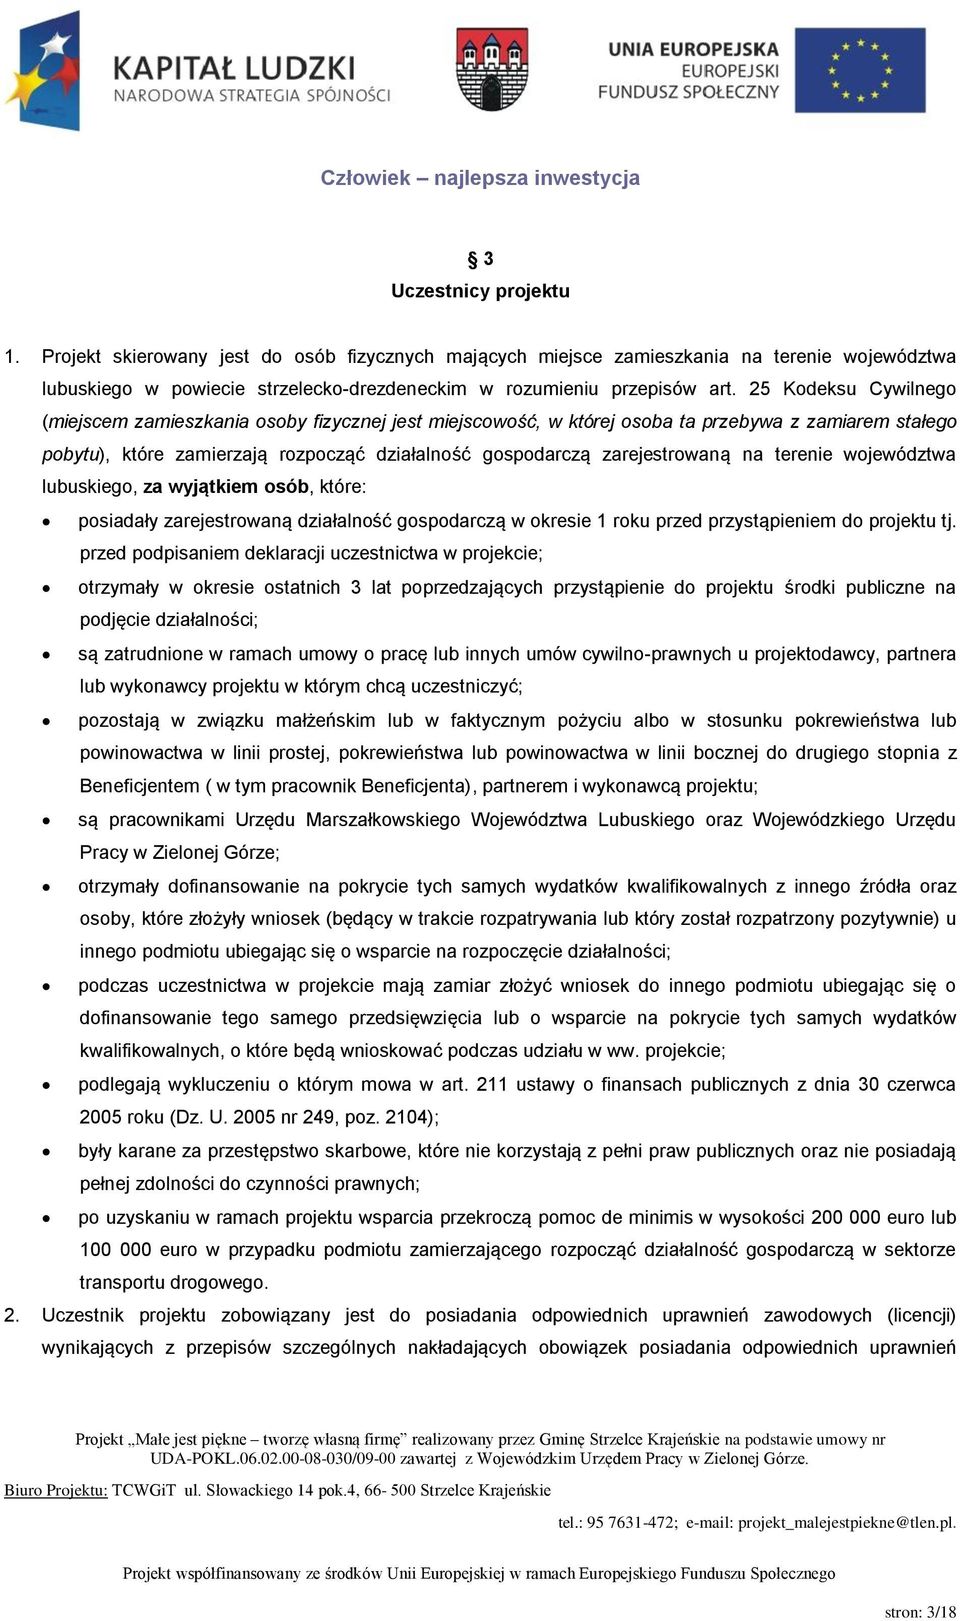 na terenie województwa lubuskiego, za wyjątkiem osób, które: posiadały zarejestrowaną działalność gospodarczą w okresie 1 roku przed przystąpieniem do projektu tj.